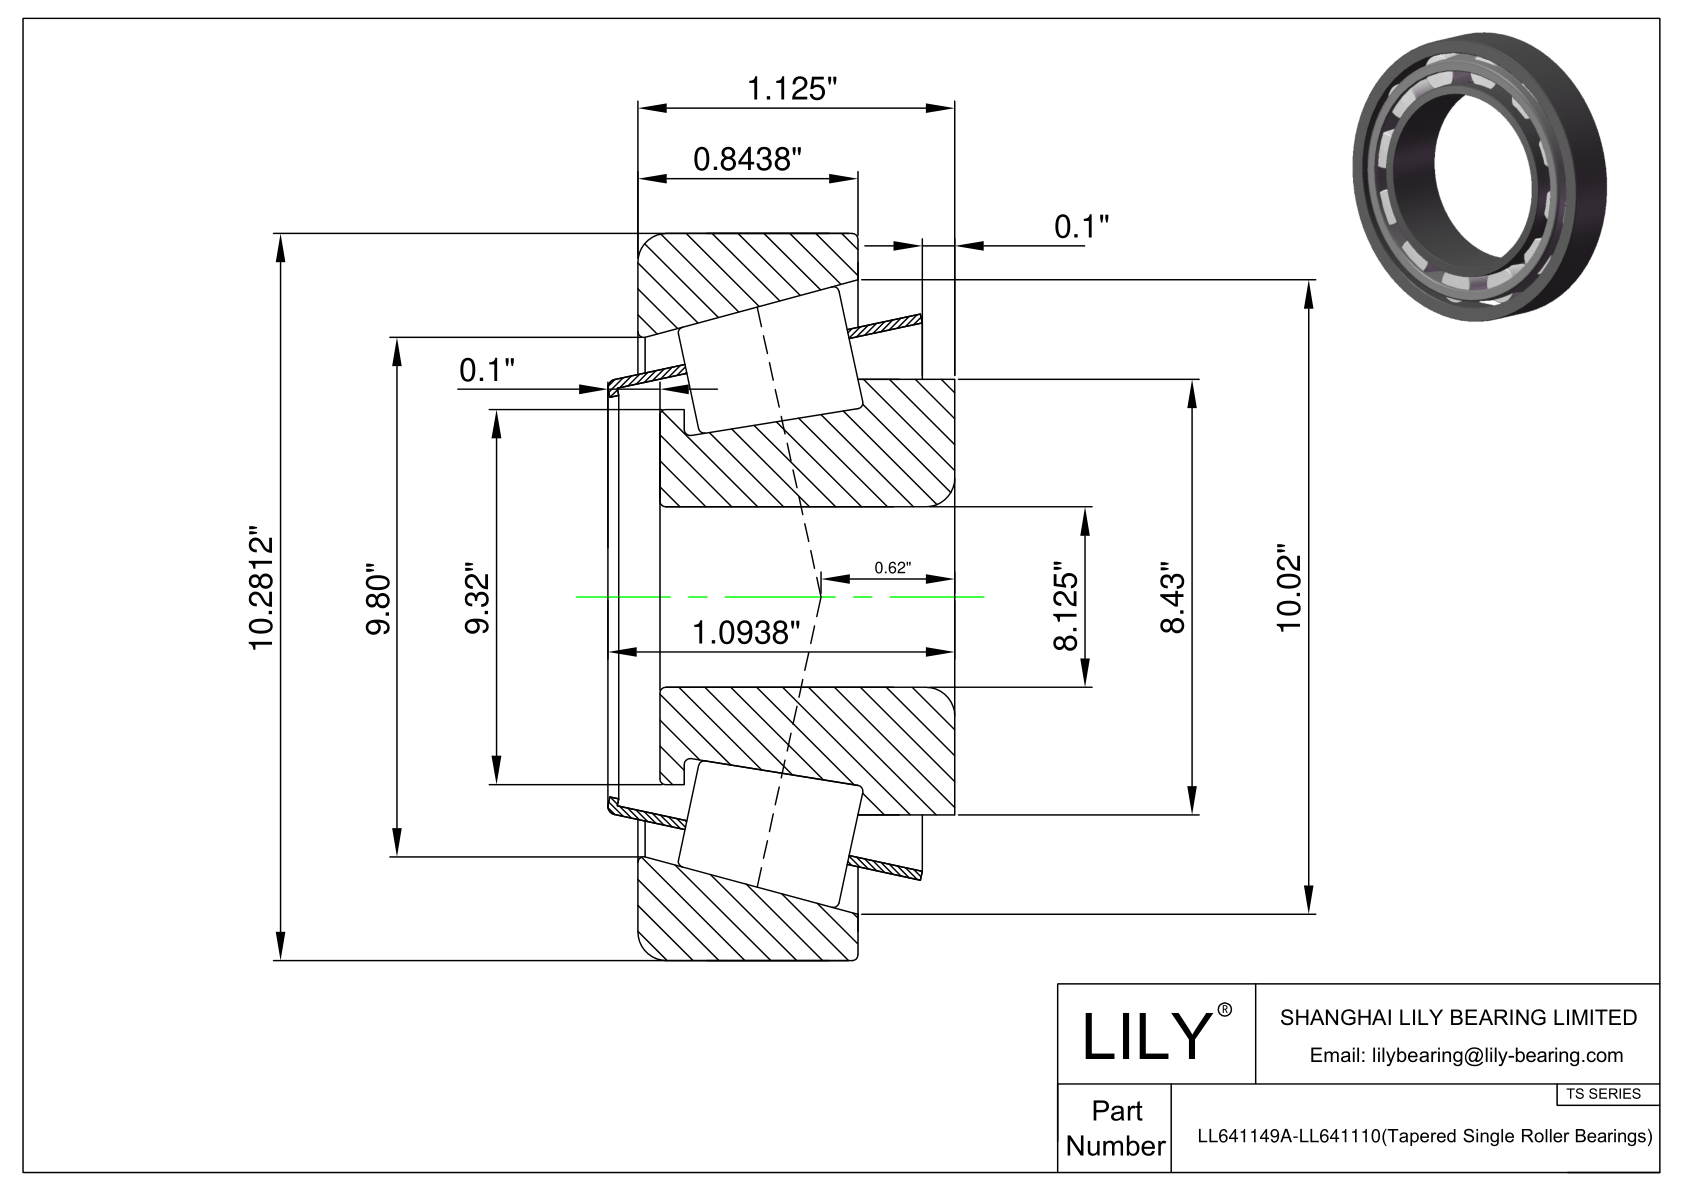 LL641149A-LL641110 TS系列(圆锥单滚子轴承)(英制) CAD图形